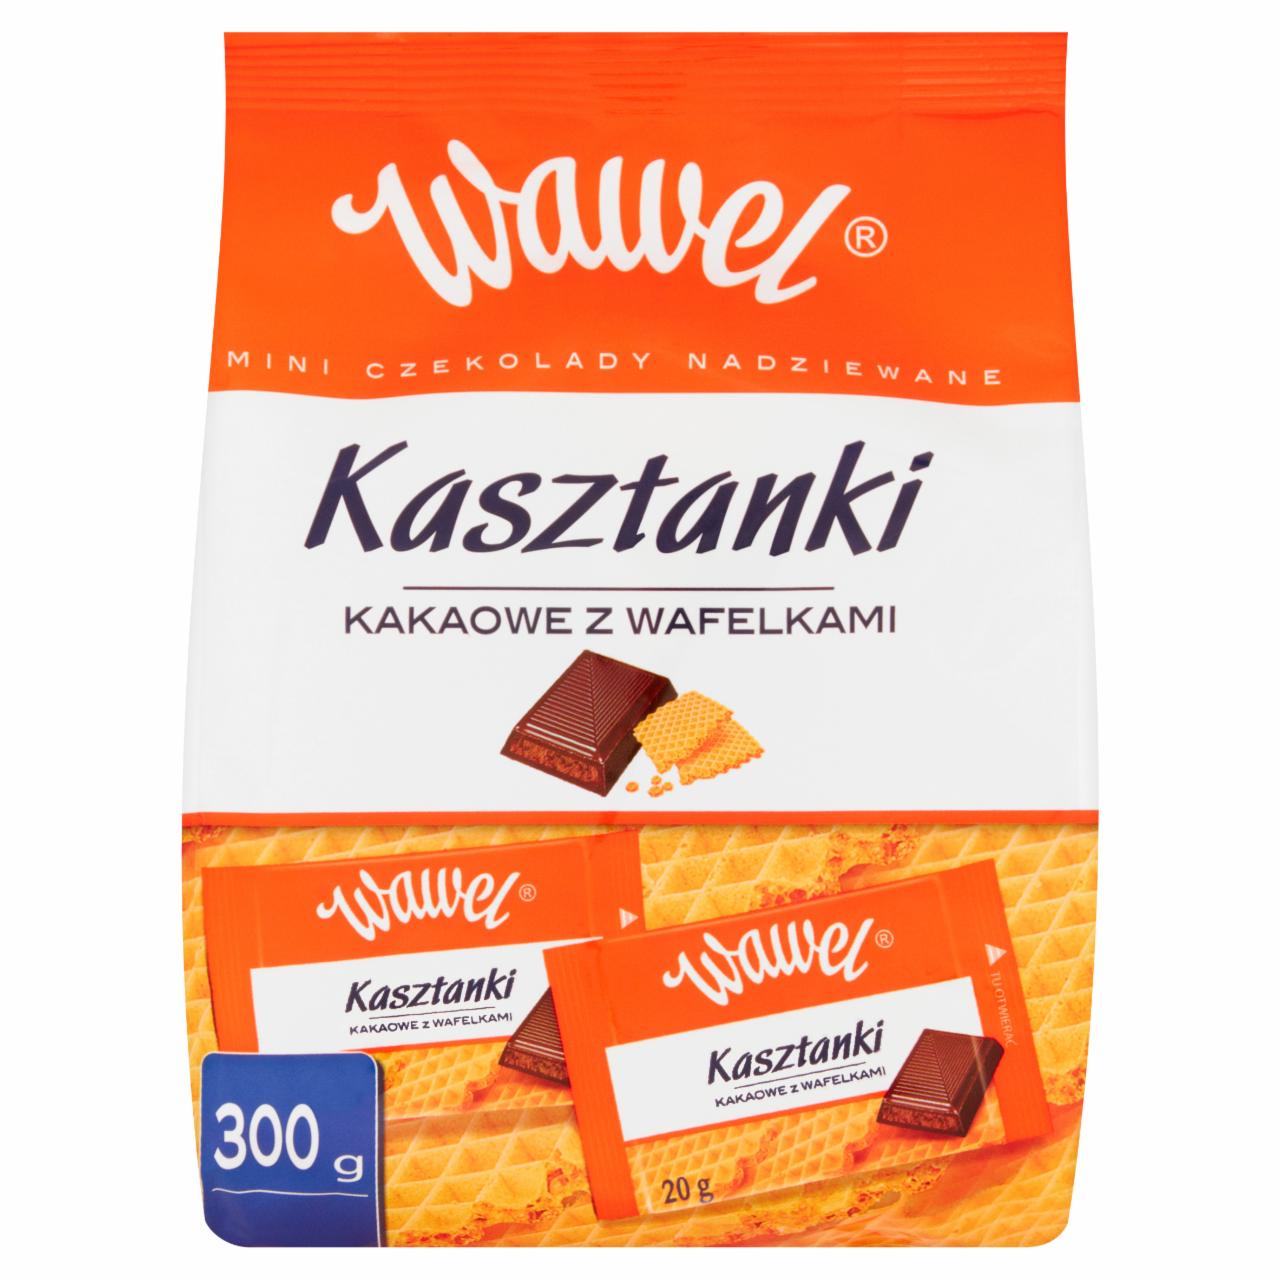 Zdjęcia - Wawel Kasztanki kakaowe z wafelkami Mini czekolady nadziewane 300 g